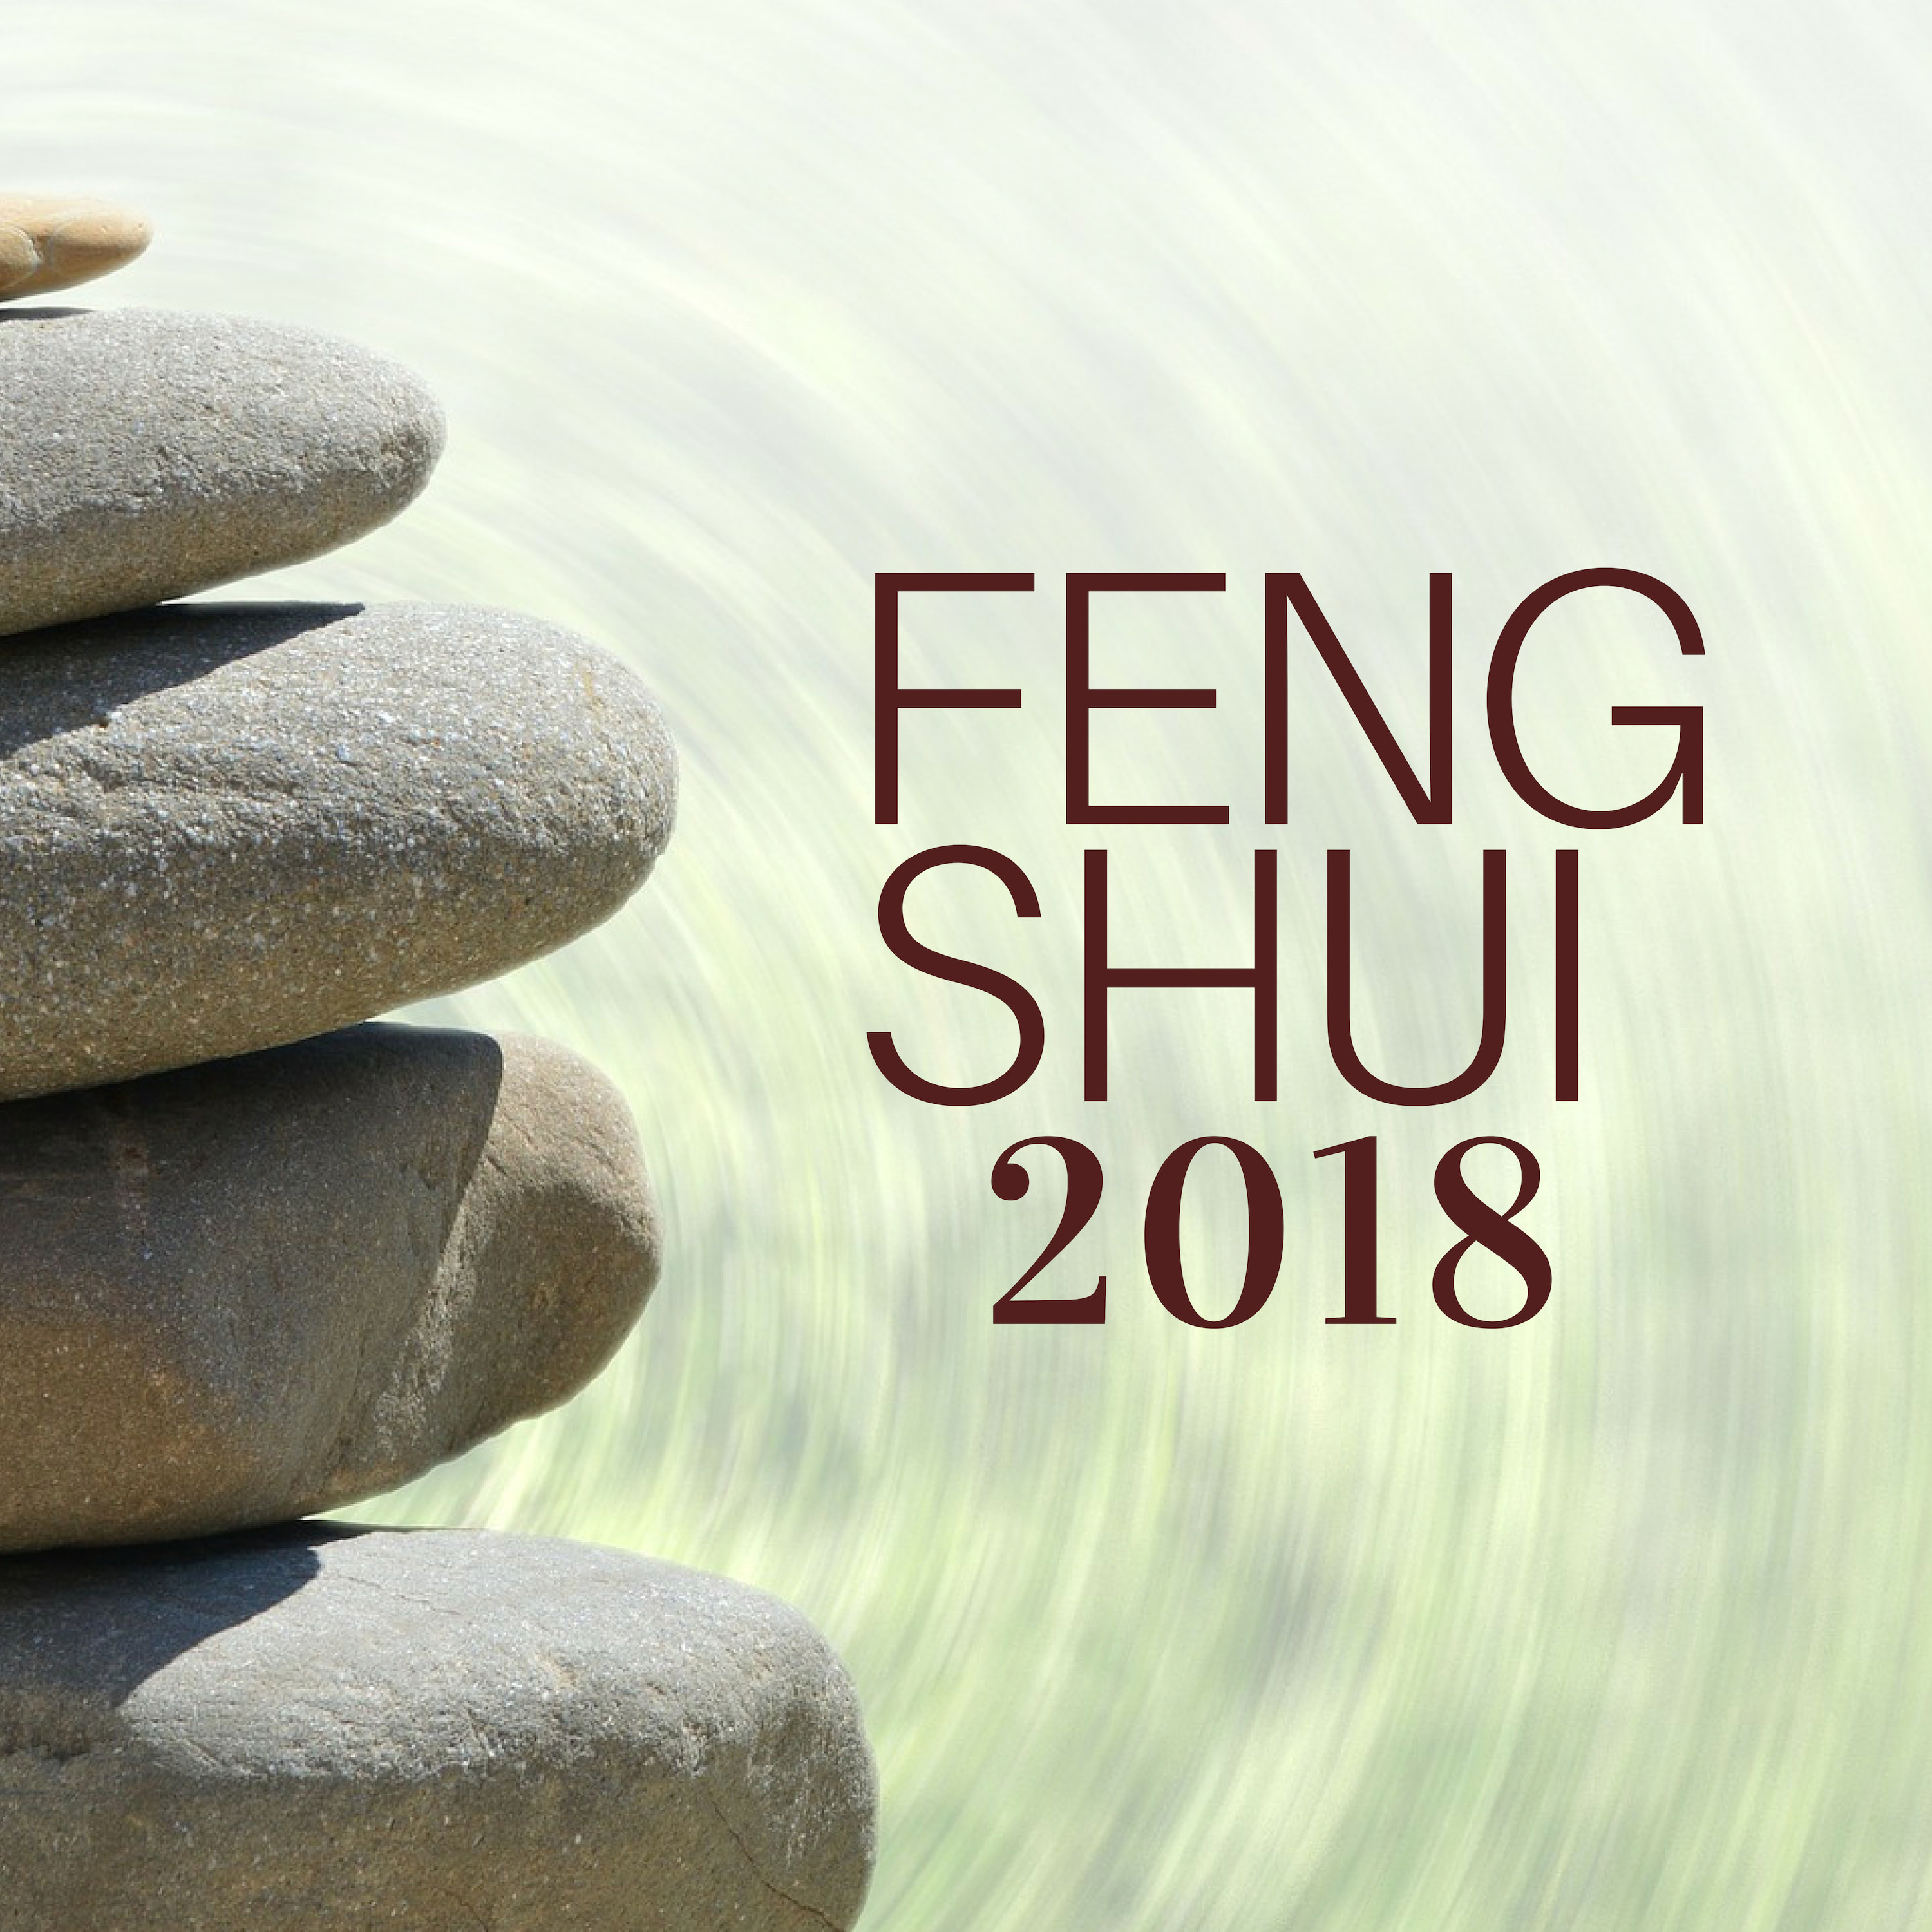 FENG SHUI 2018